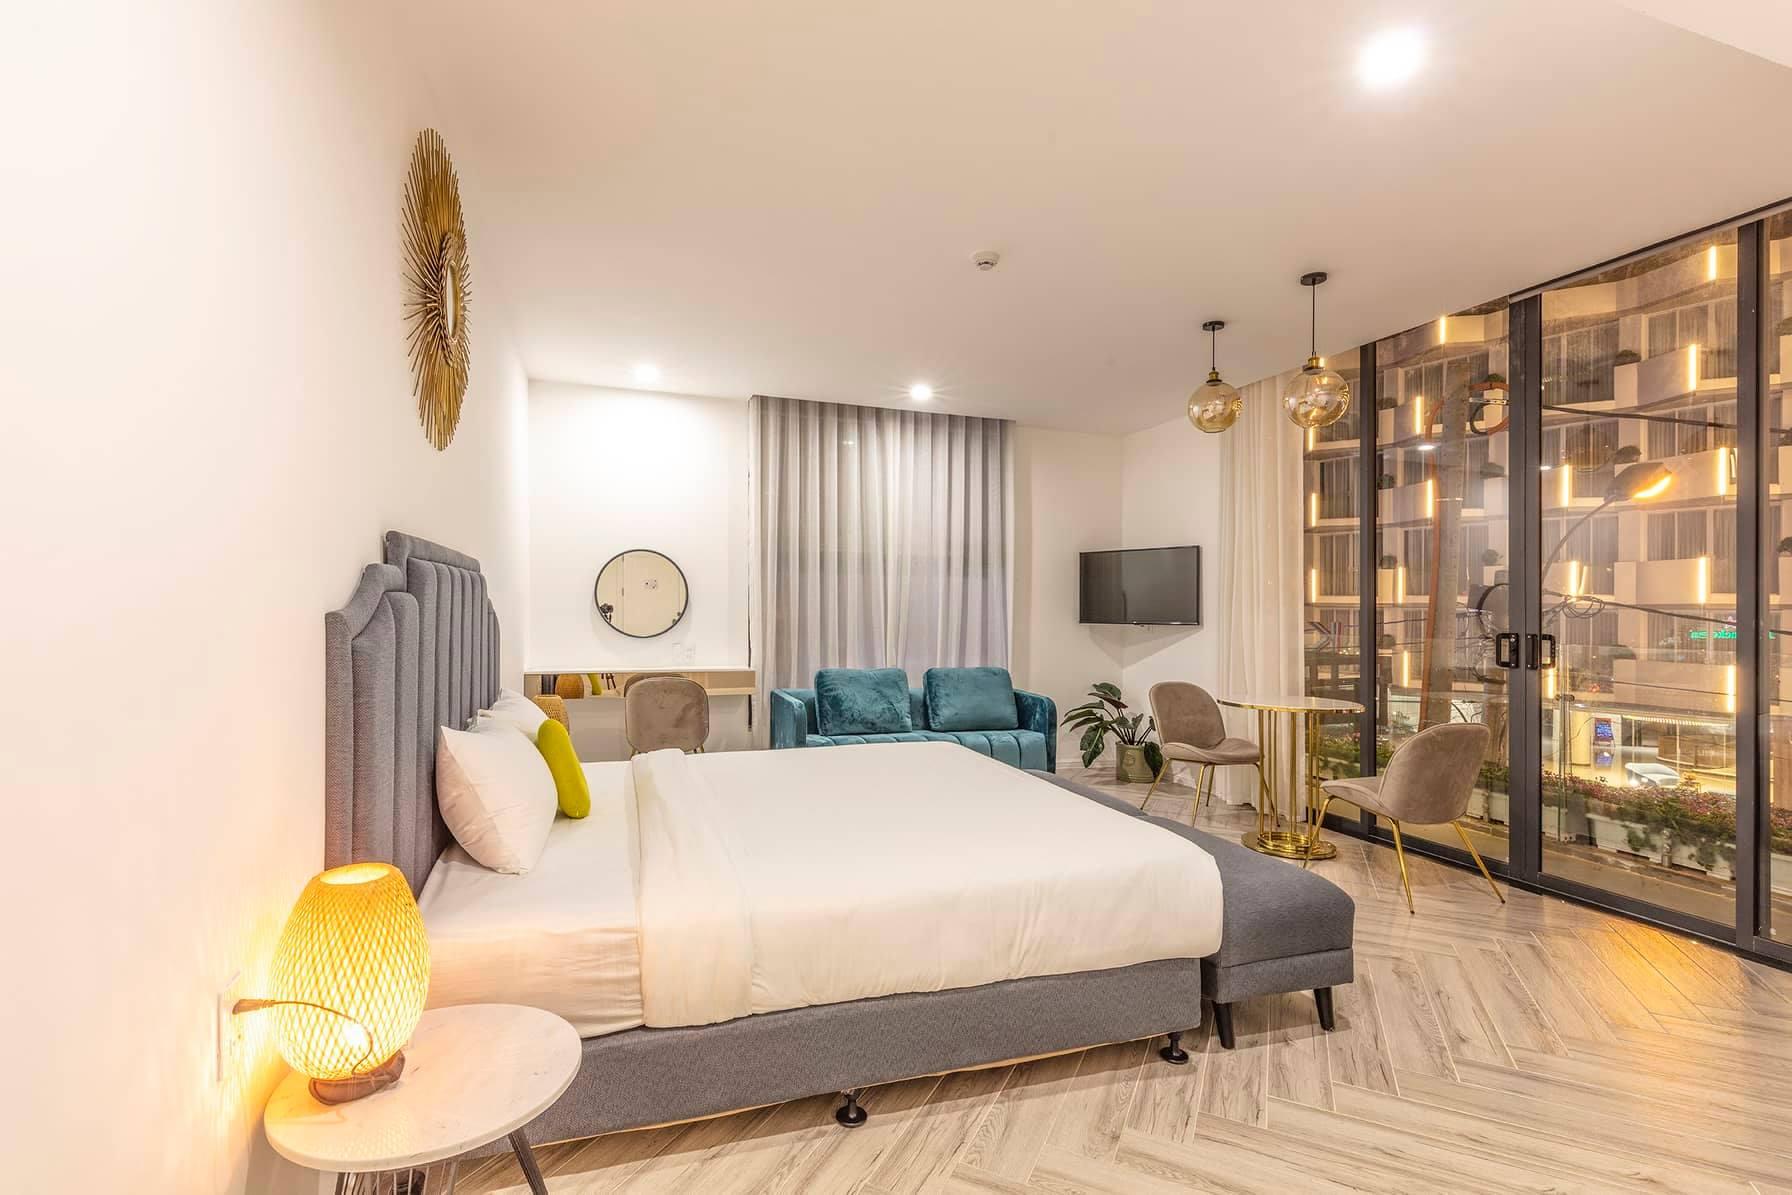 lens hotel da lat - Top 10 khách sạn đường Bùi Thị Xuân Đà Lạt giá rẻ